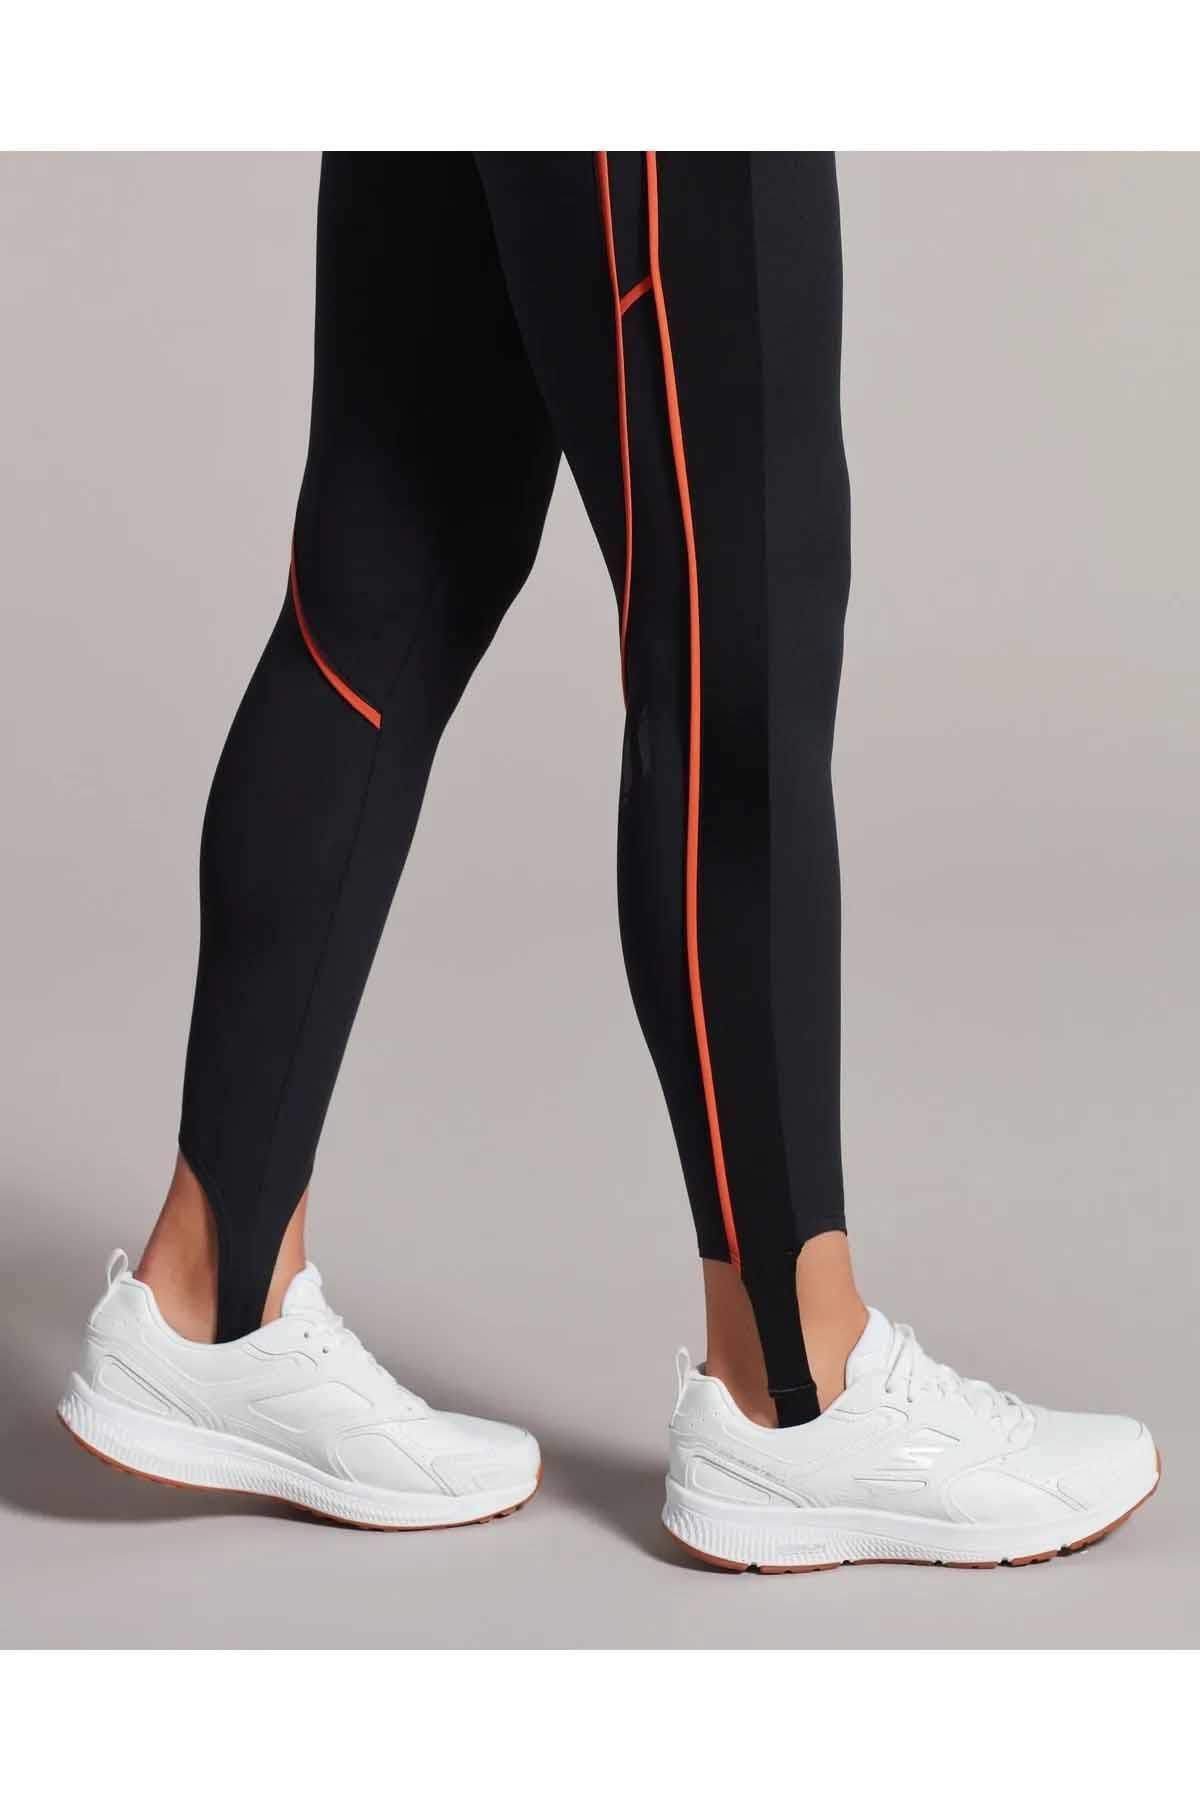 Skechers Go Run Consistent - Broad Spe Kadın Günlük Spor Ayakkabı 128274 Wht Beyaz